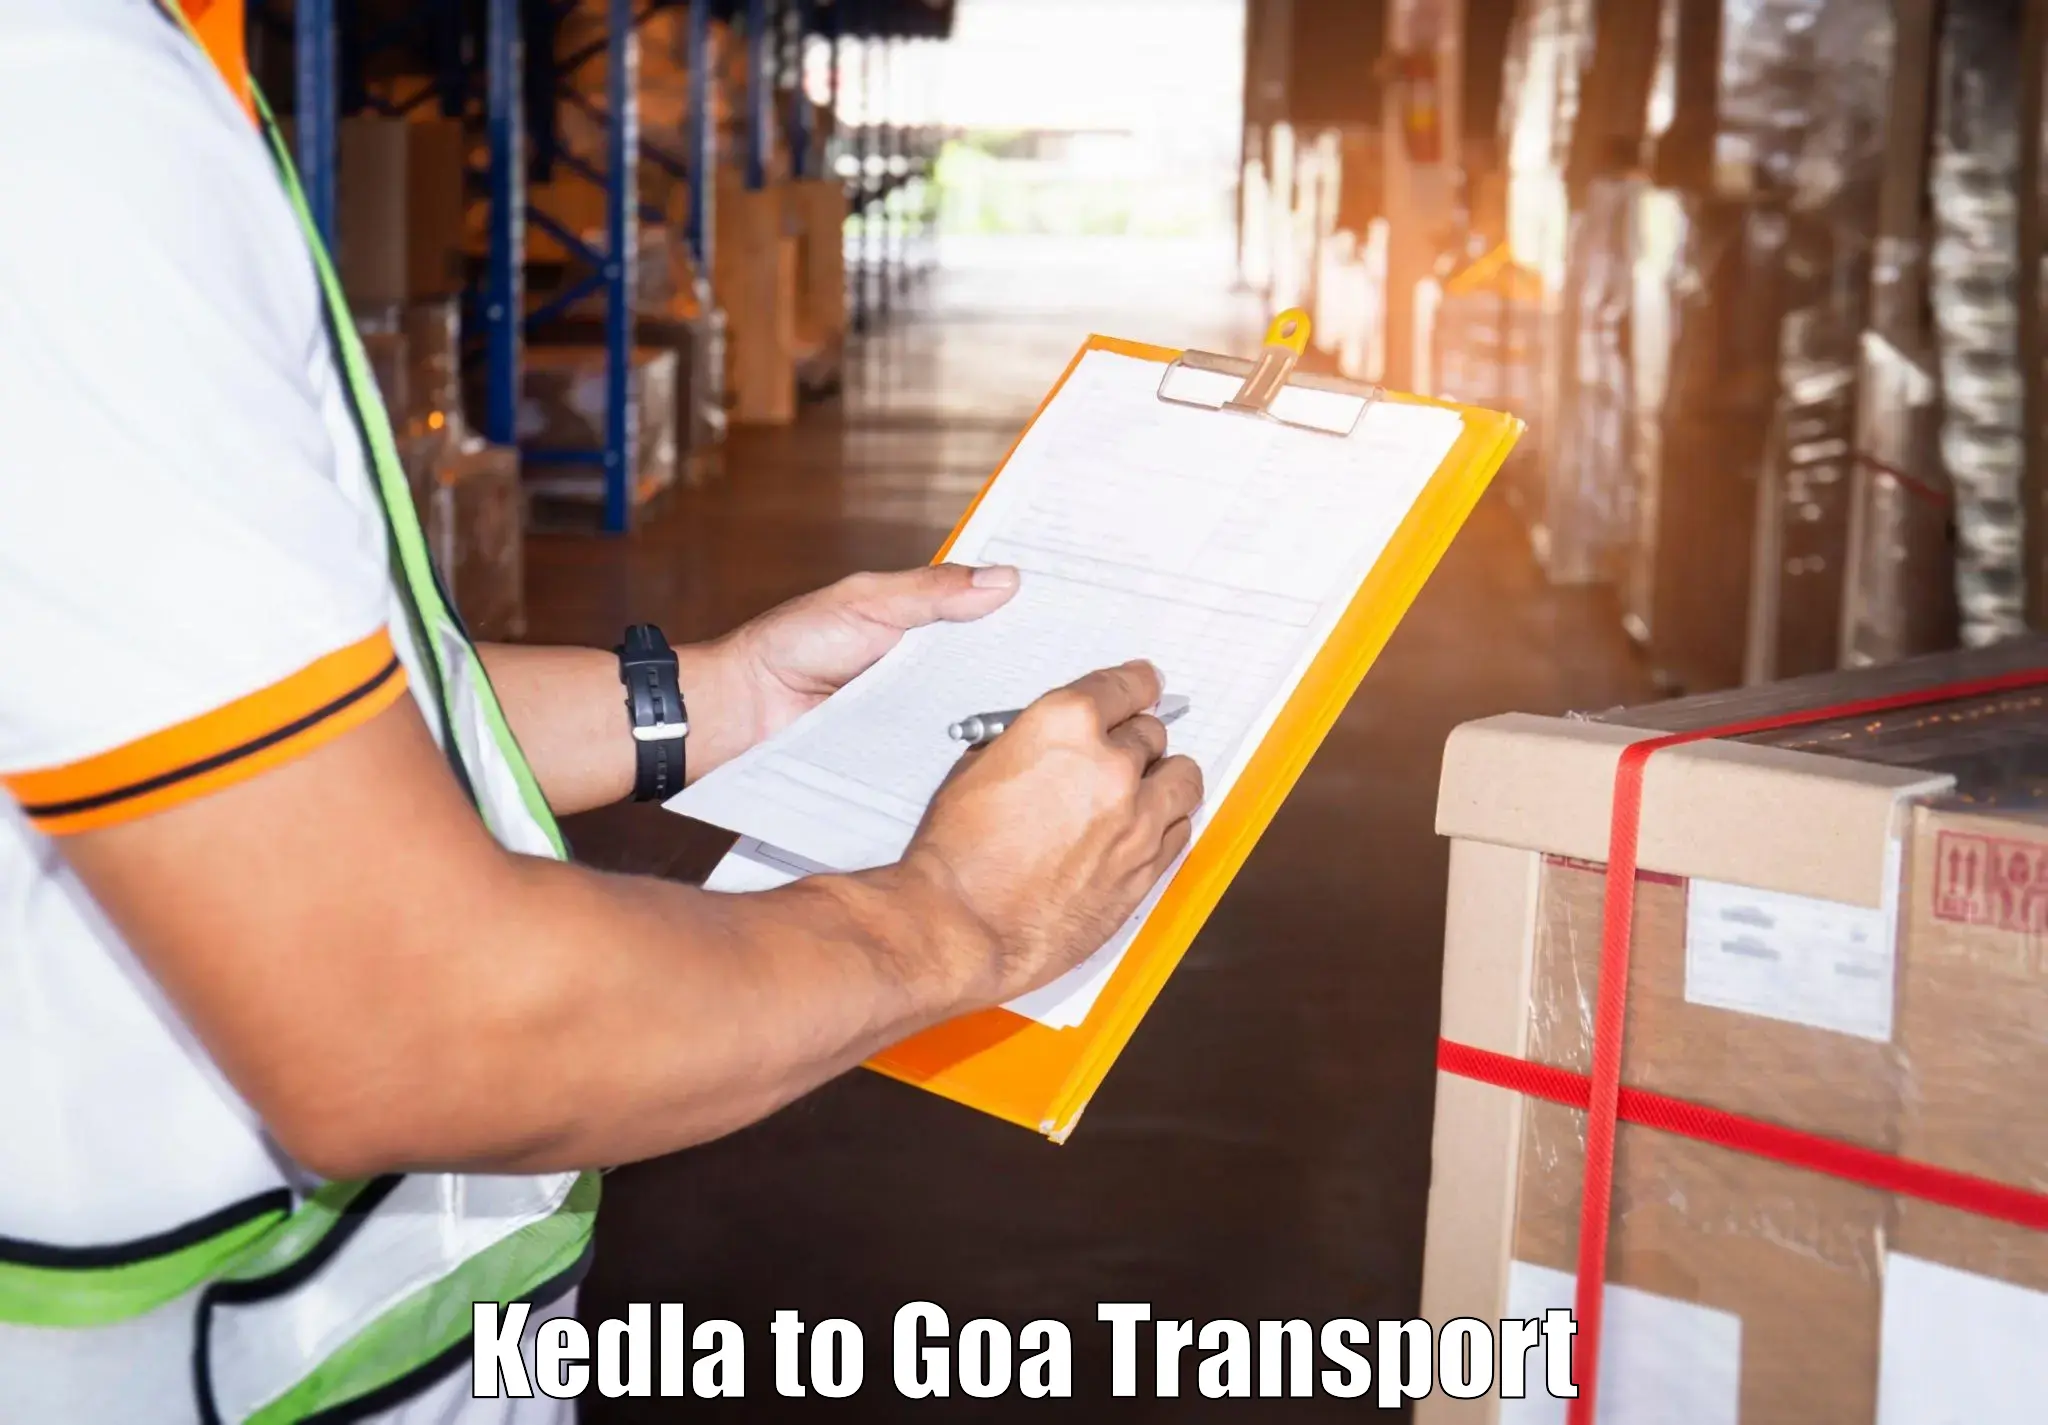 Online transport booking Kedla to Panaji